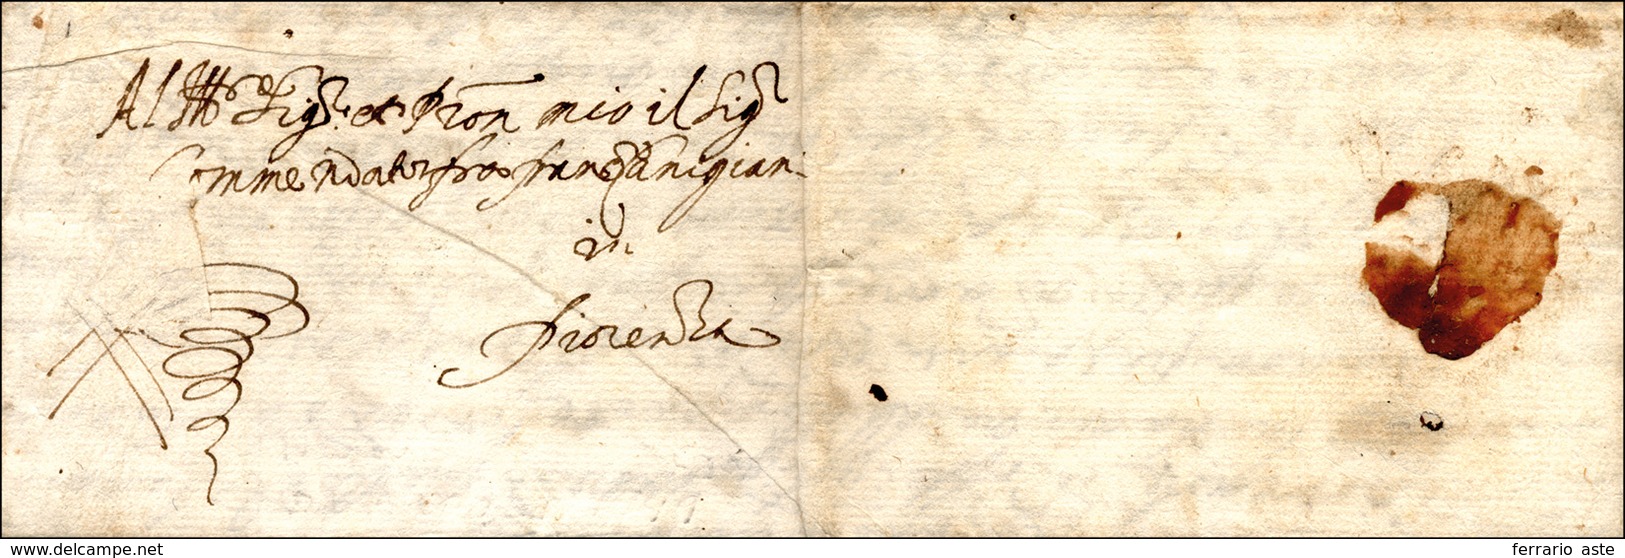 1599 - Lettera Completa Di Testo Da Napoli 16/7/1599 A Firenze. ... - 1. ...-1850 Vorphilatelie